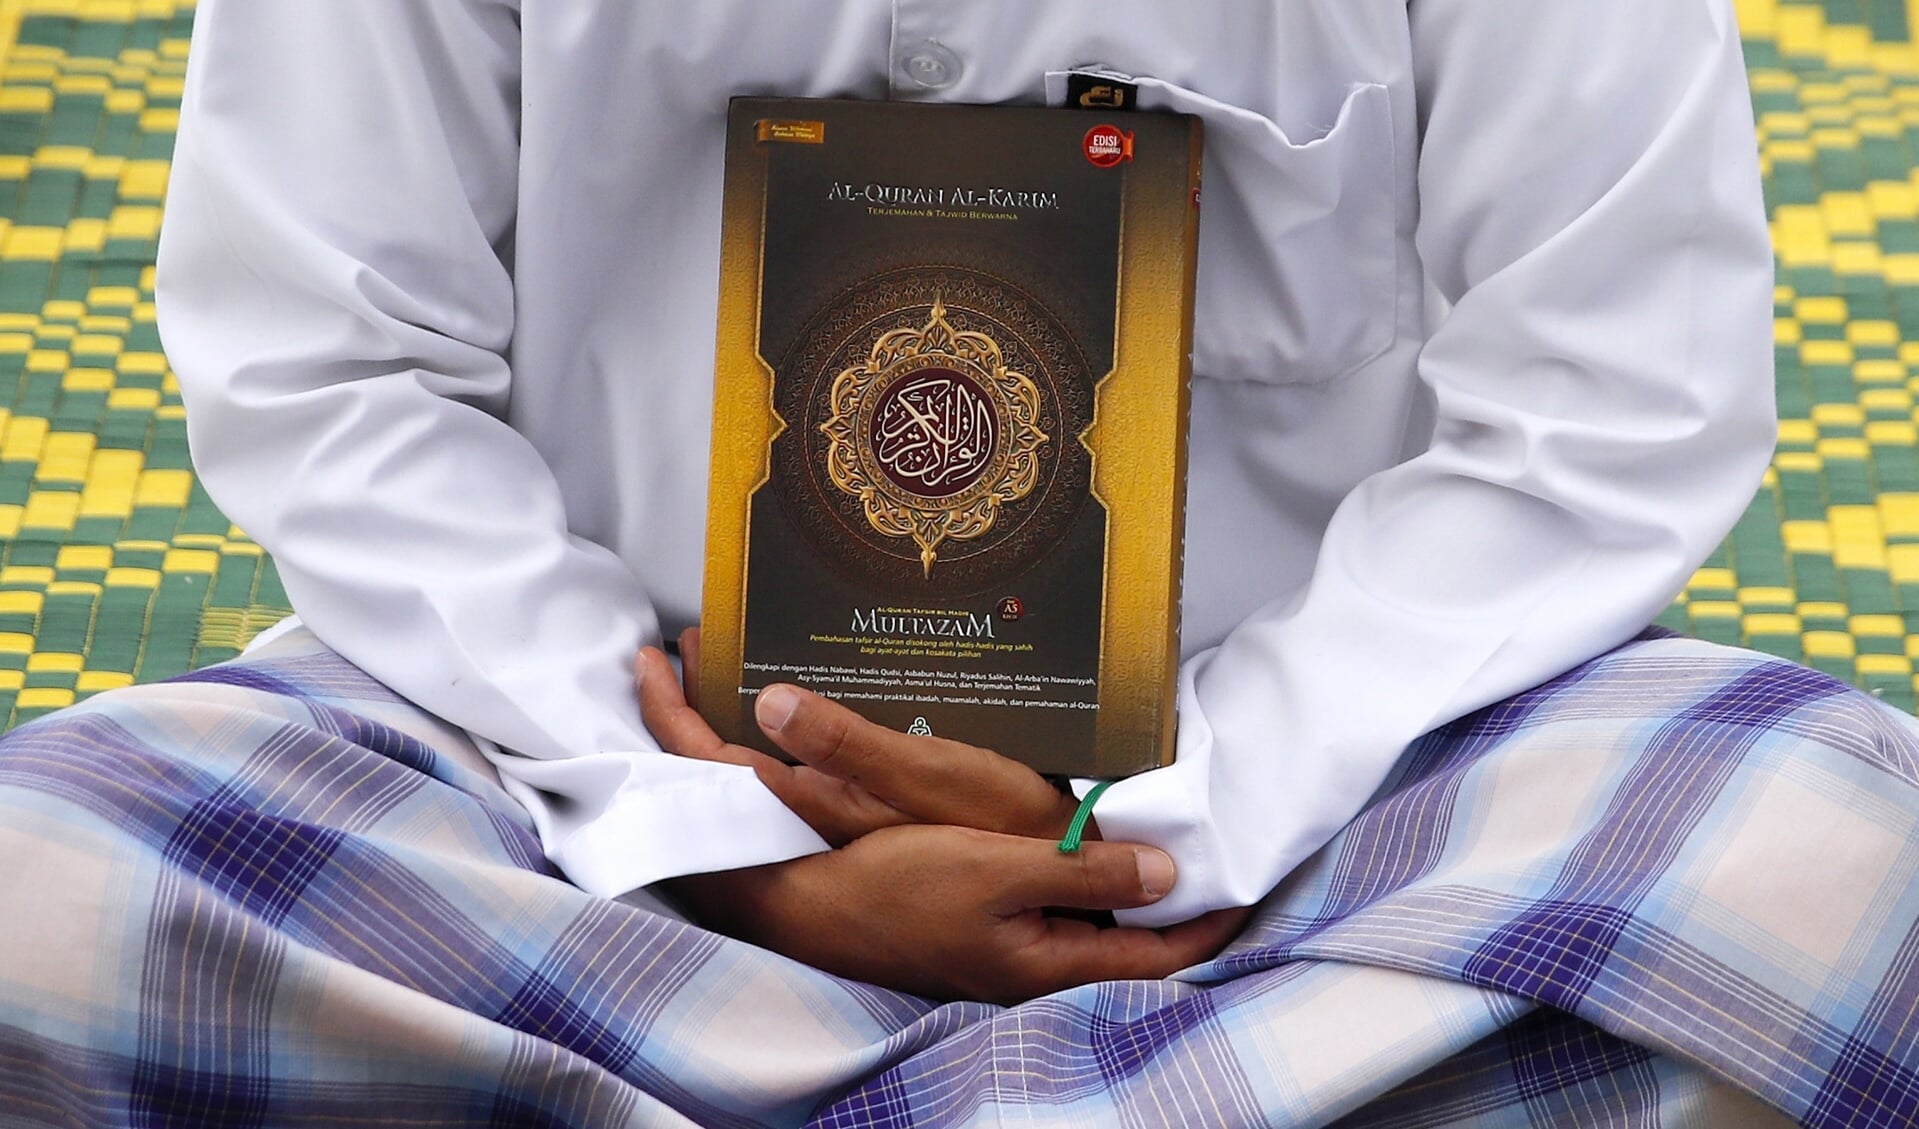 Het salafisme, een opkomende stroming die de Koran strikt letterlijk leest, is eigentijds, zegt Yusuf Celik. ‘De ironie is dat salafisten beweren een historische lijn te vertegenwoordigen, maar eigenlijk een hedendaags fenomeen zijn.’